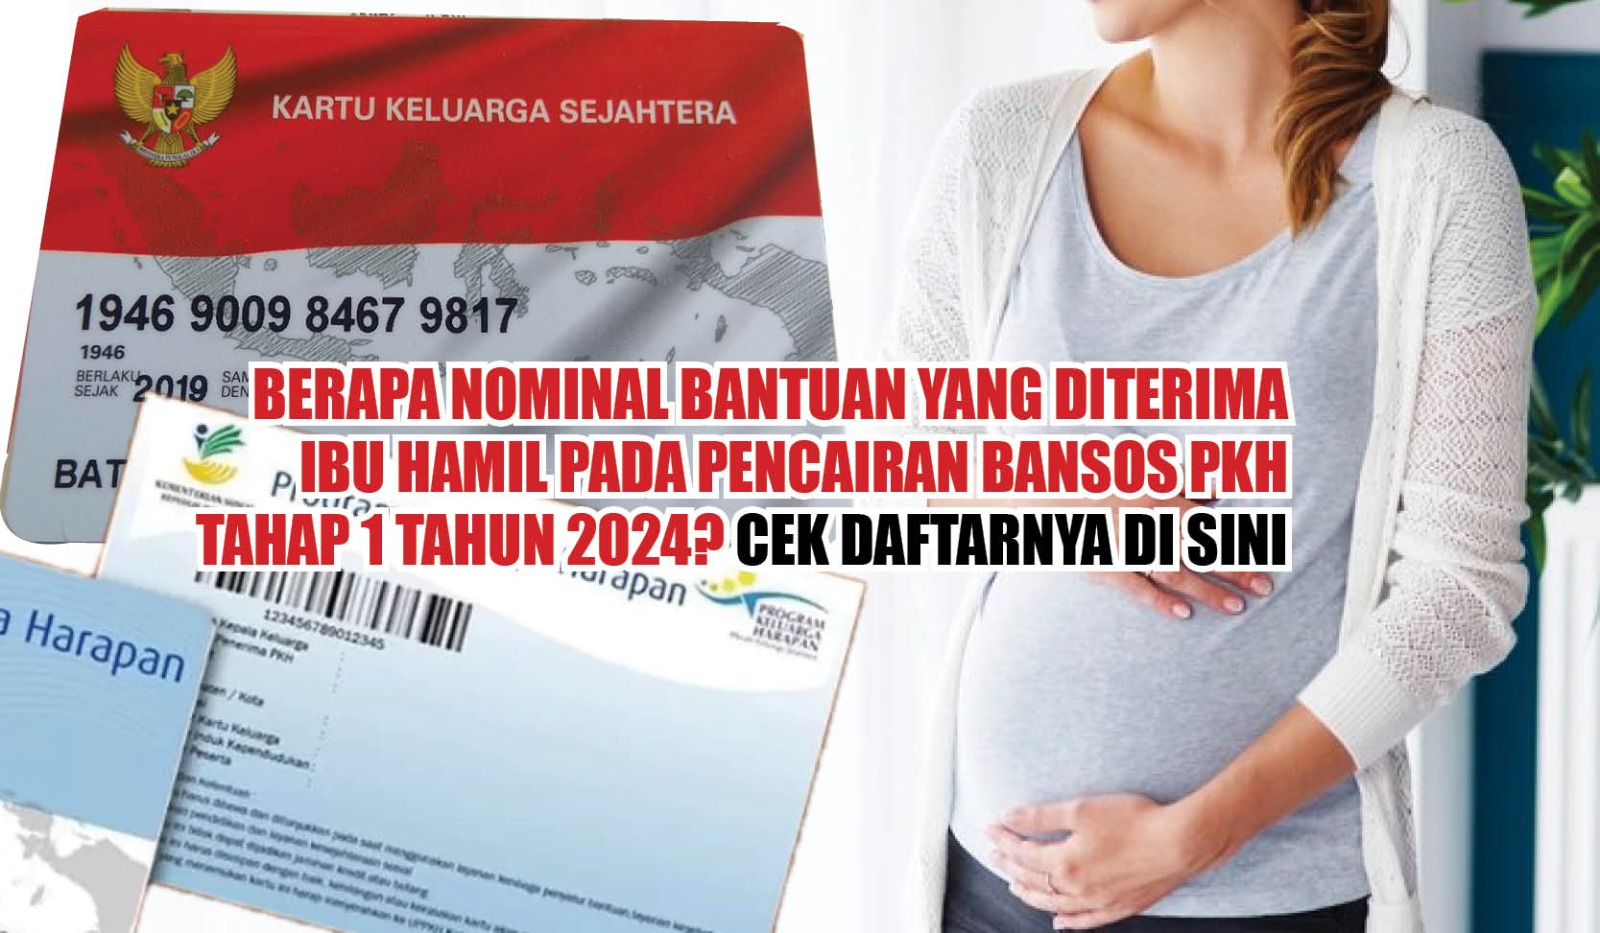 Berapa Nominal Bantuan yang Diterima Ibu Hamil Pada Pencairan Bansos PKH Tahap 1 Tahun 2024? Cek Daftarnya